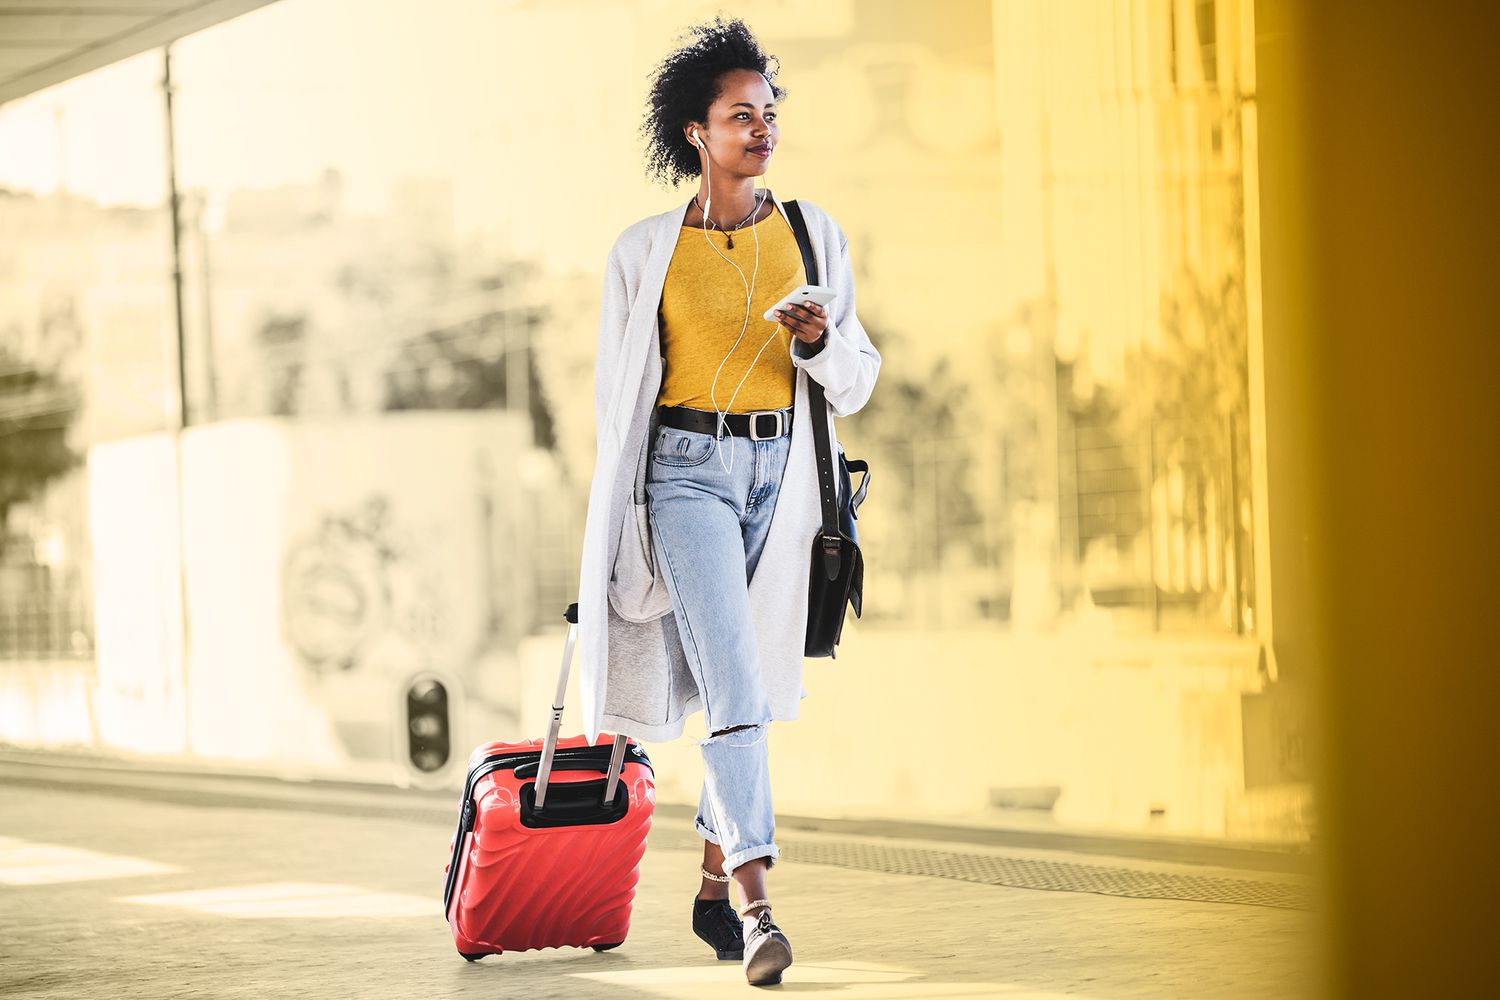 Una mujer joven con un teléfono móvil y auriculares caminando con una maleta